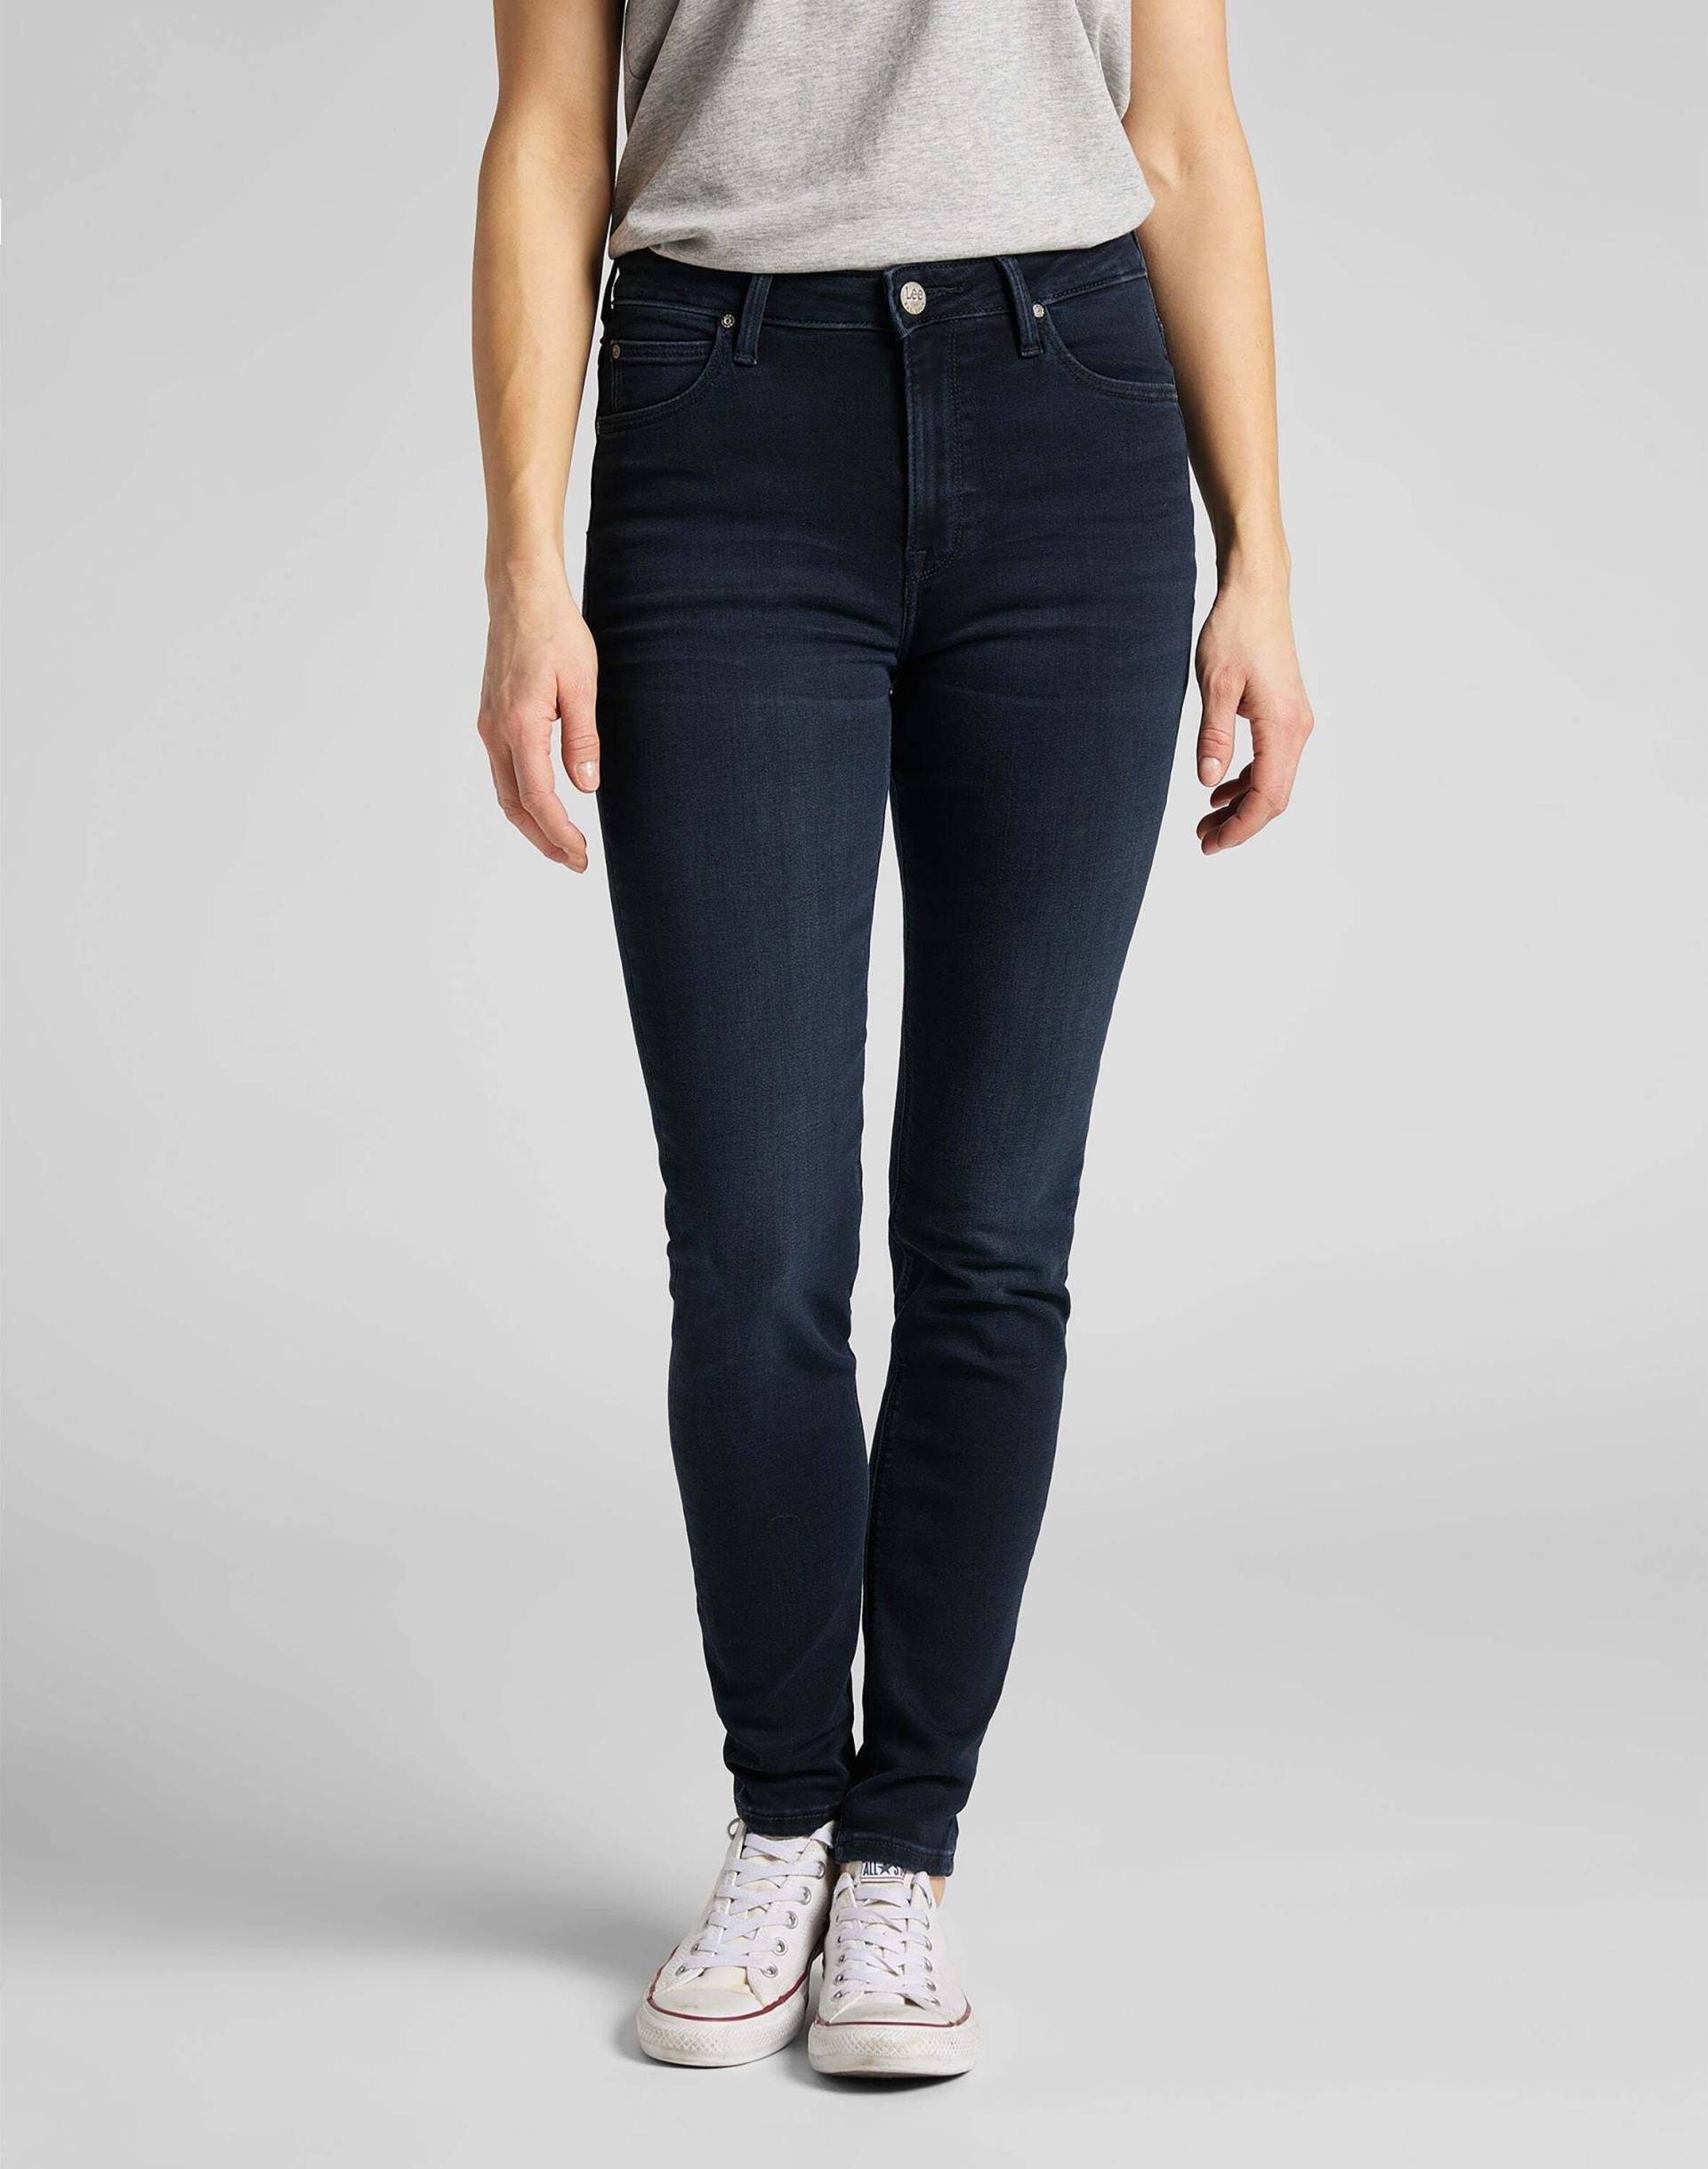 Jeans Skinny Fit Scarlett High Damen Marine L33/W26 von Lee